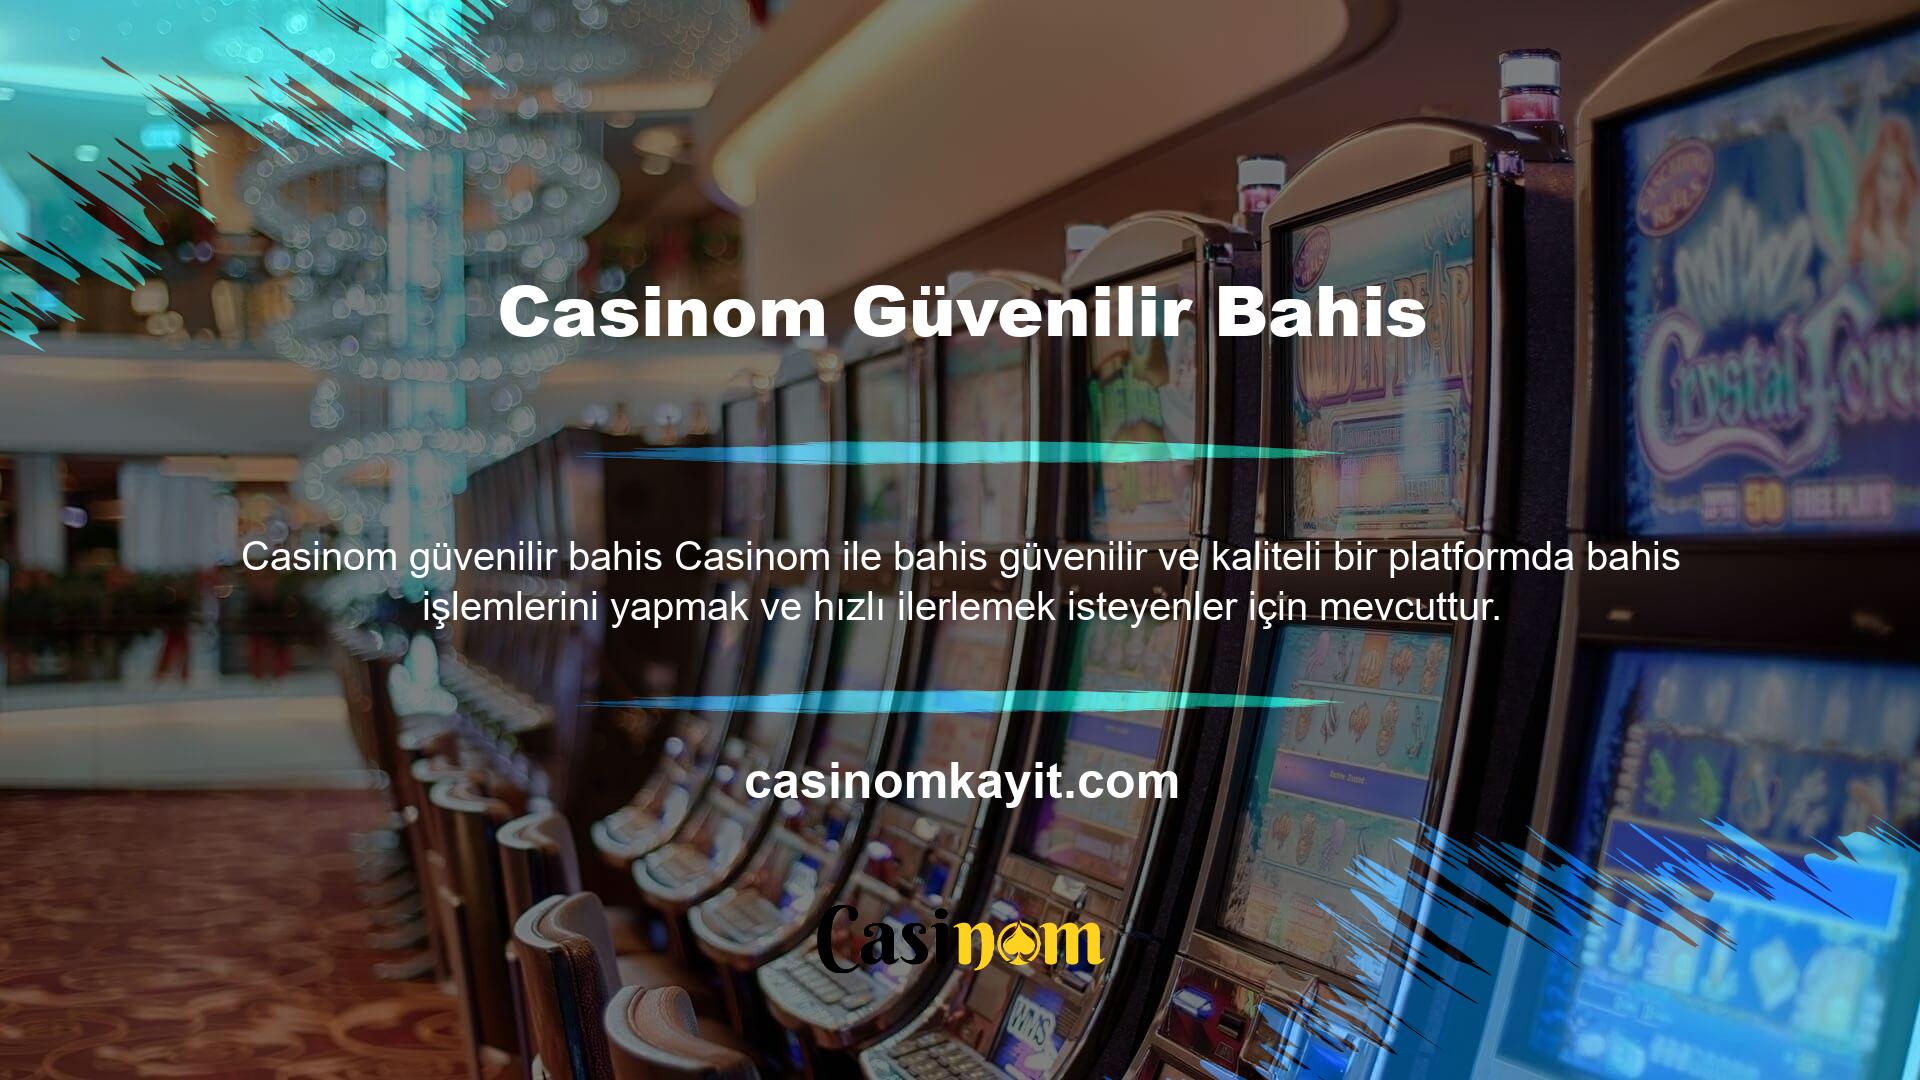 Casinom, müşterilerine bir güven meselesi sunmakta ve 7/24 canlı destek, para yatırma ve çekme, diğer bahis şirketlerinde bulunmayan bonuslar ve daha ayrıcalıklı koşullar sunarak müşteri memnuniyetini her zaman en üst düzeye çıkarmaktadır